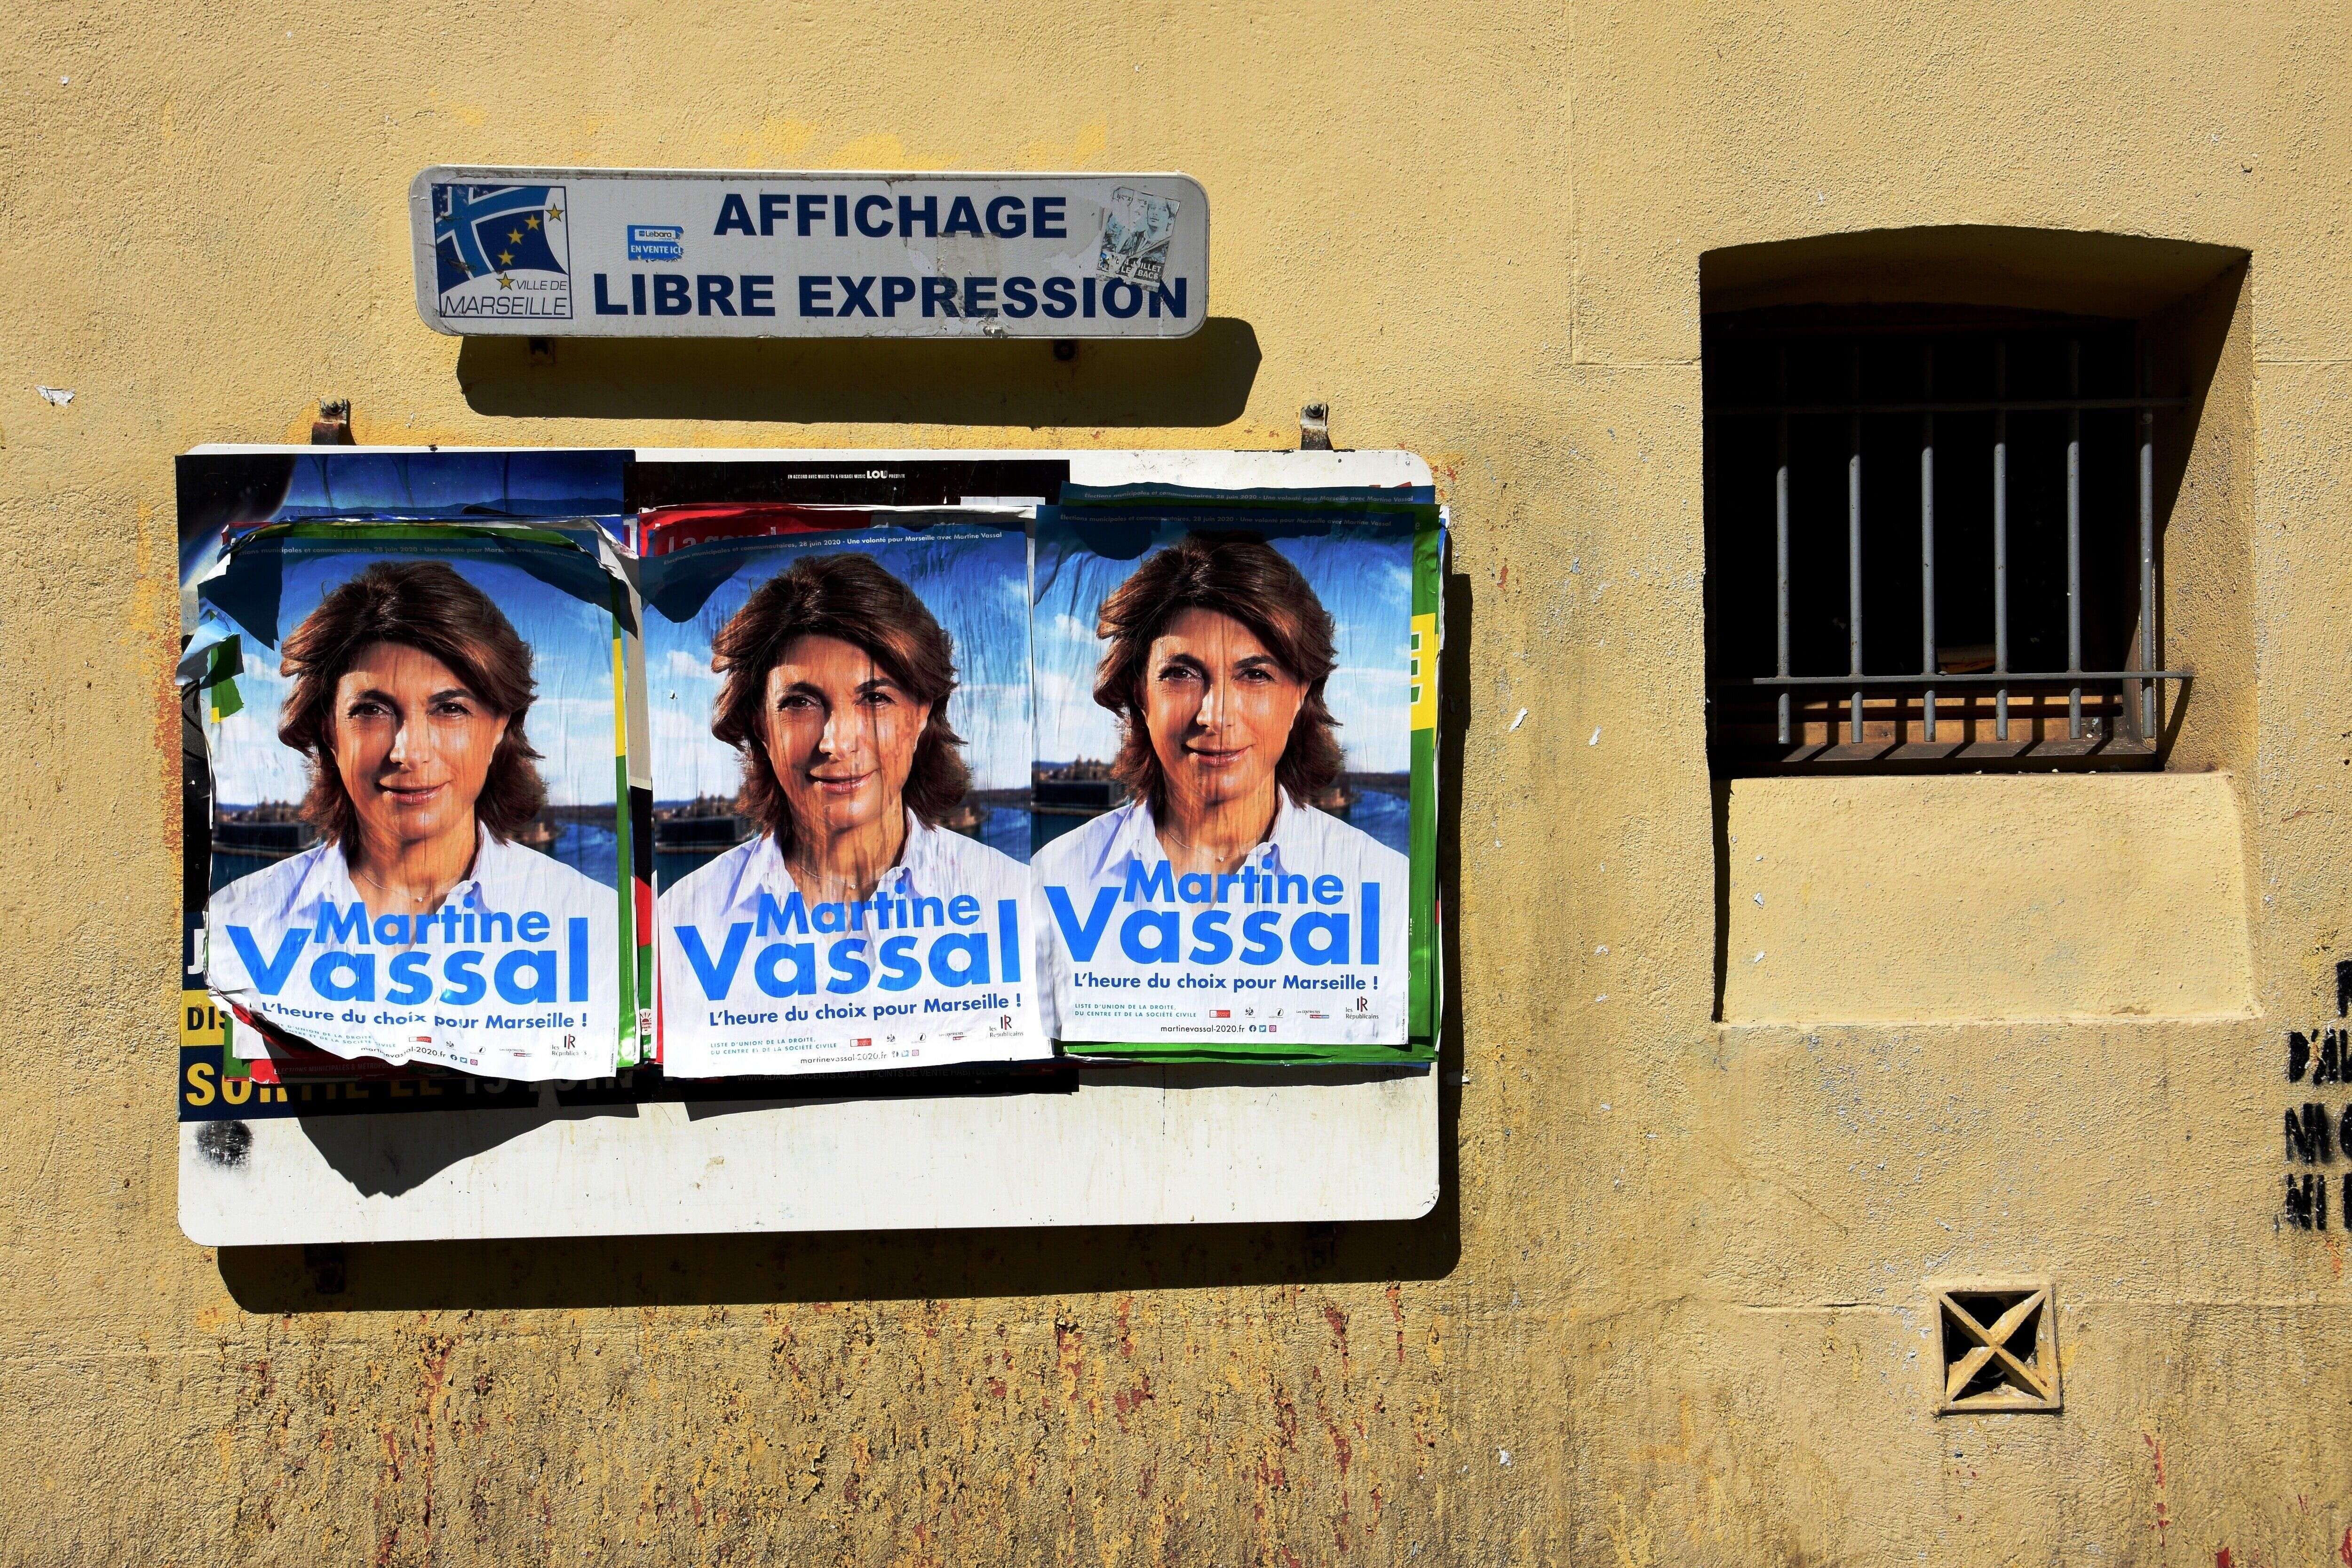 Affiches de campagne de Martine Vassal, candidate LR aux élections municipales de Marseille.